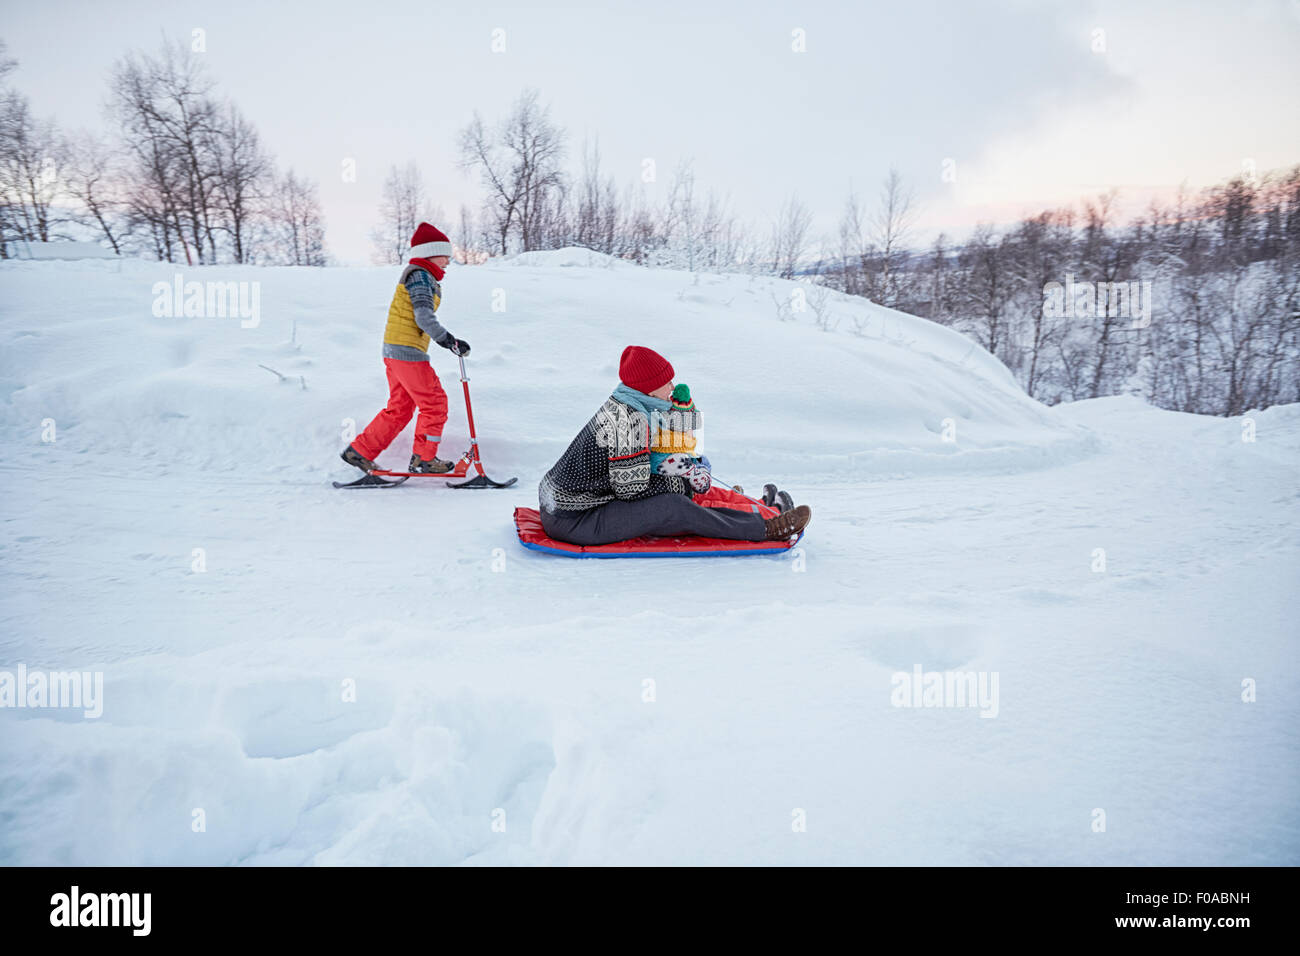 La mère et les deux fils de toboggan et scooter de neige sur la colline couverte de neige, Hemavan,Sweden Banque D'Images